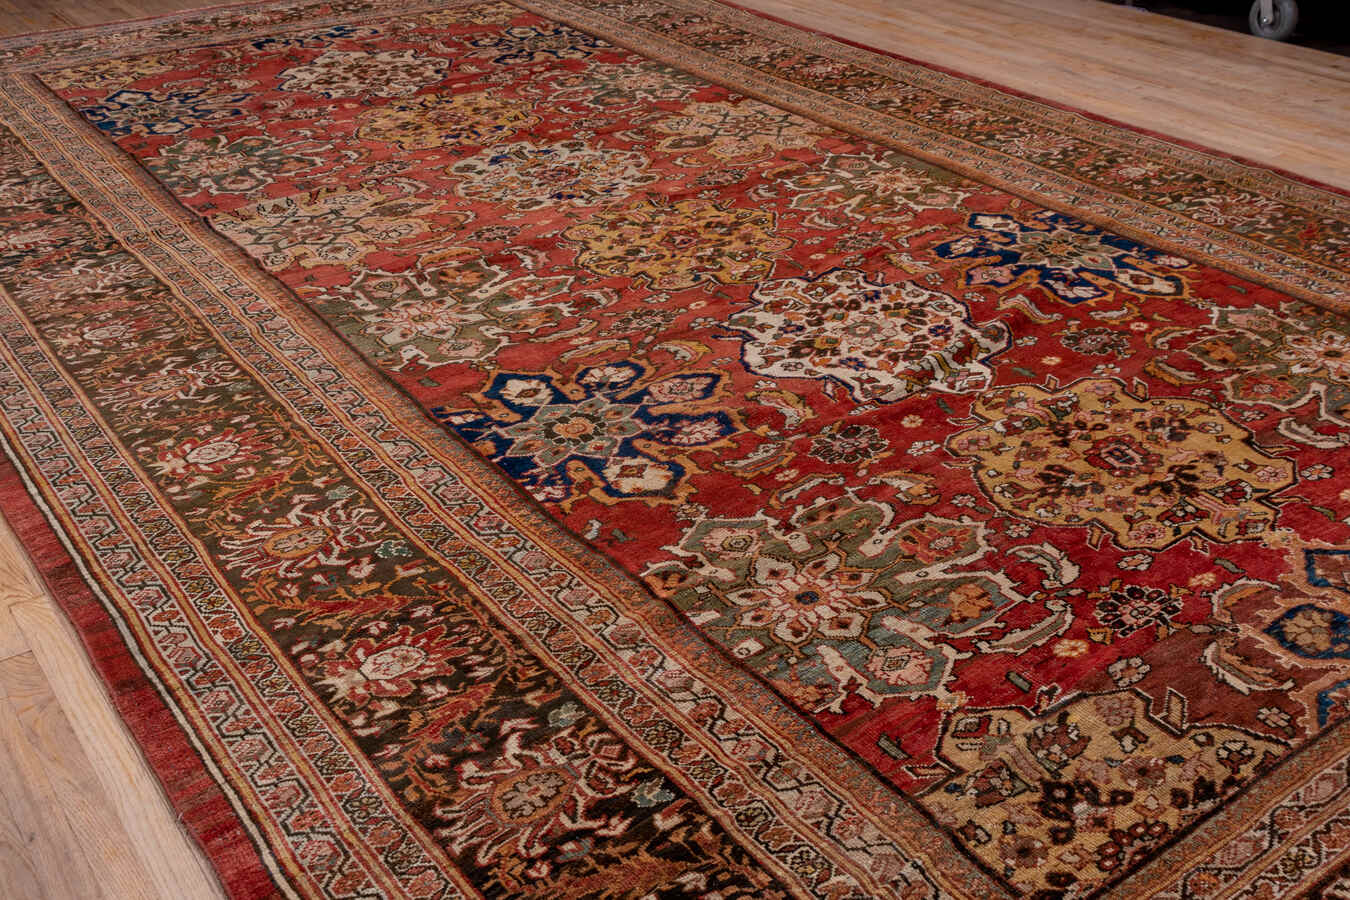 Antique sultan abad Carpet - # 56843